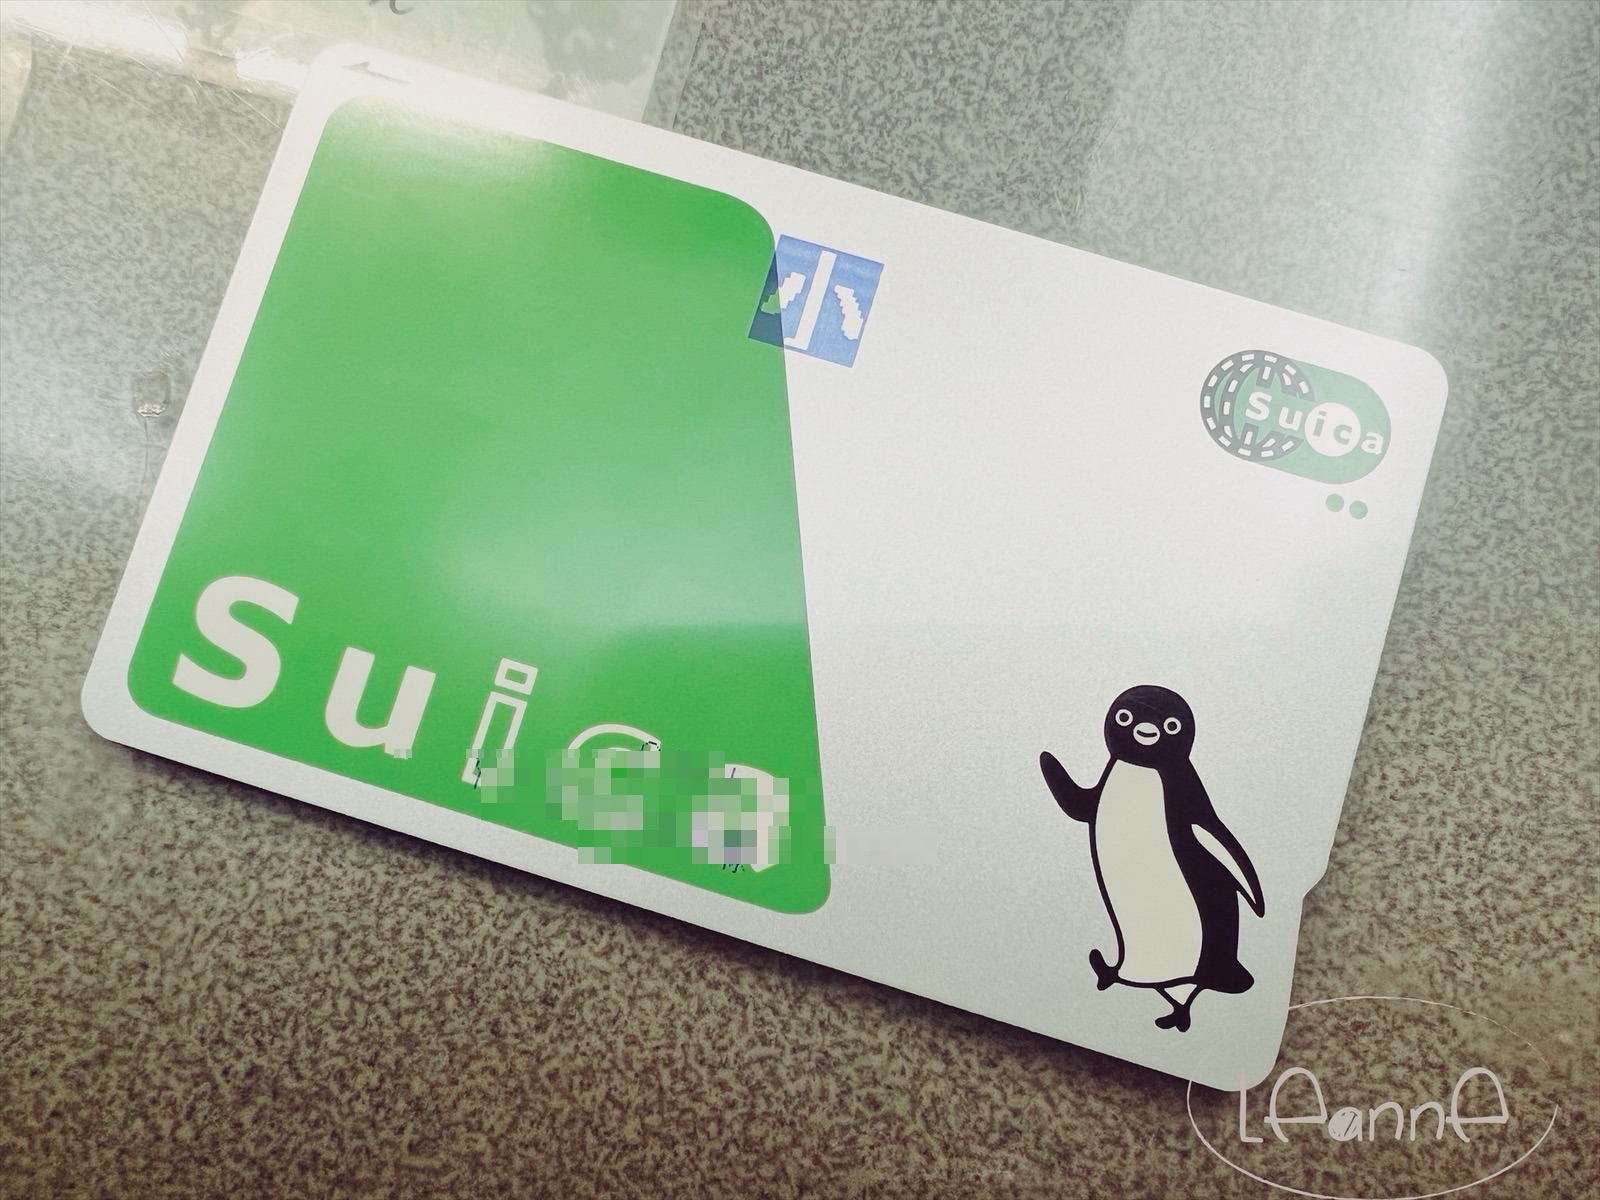 兒童西瓜卡(Suica)如何變更為成人卡？多功能售票機更改卡片步驟教學